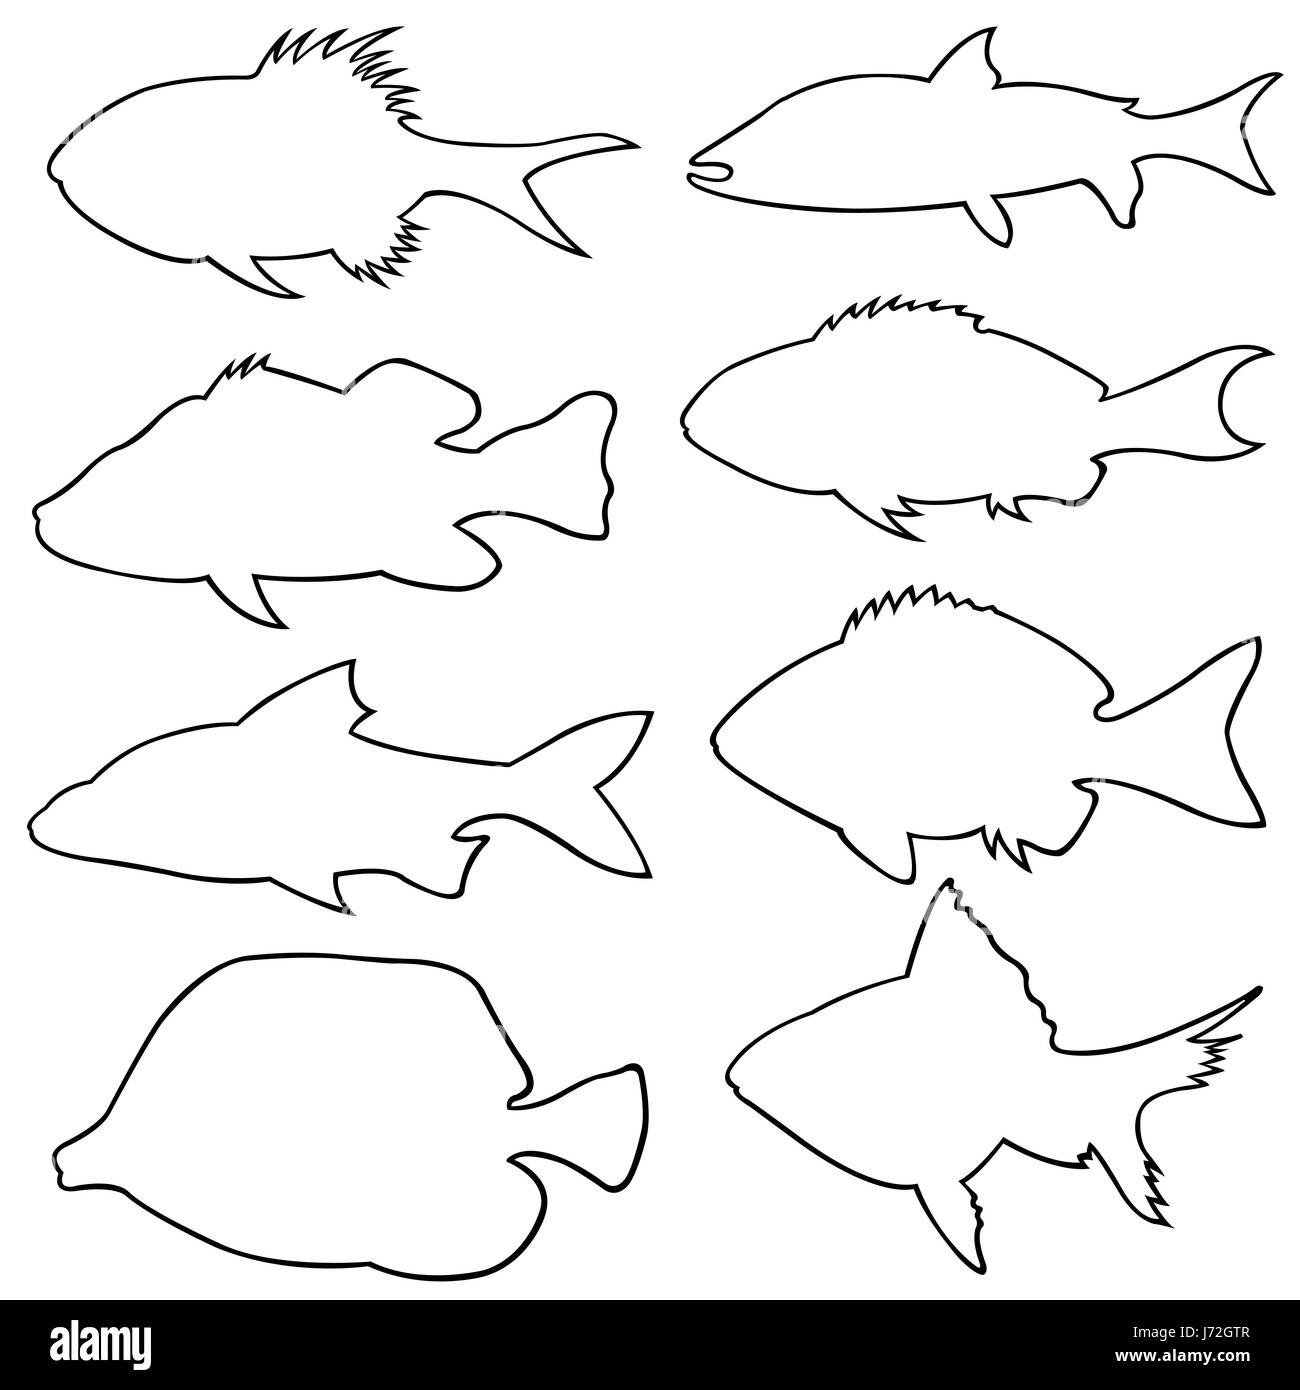 Conjunto de diferentes peces pequeños siluetas aislado en blanco Foto de stock